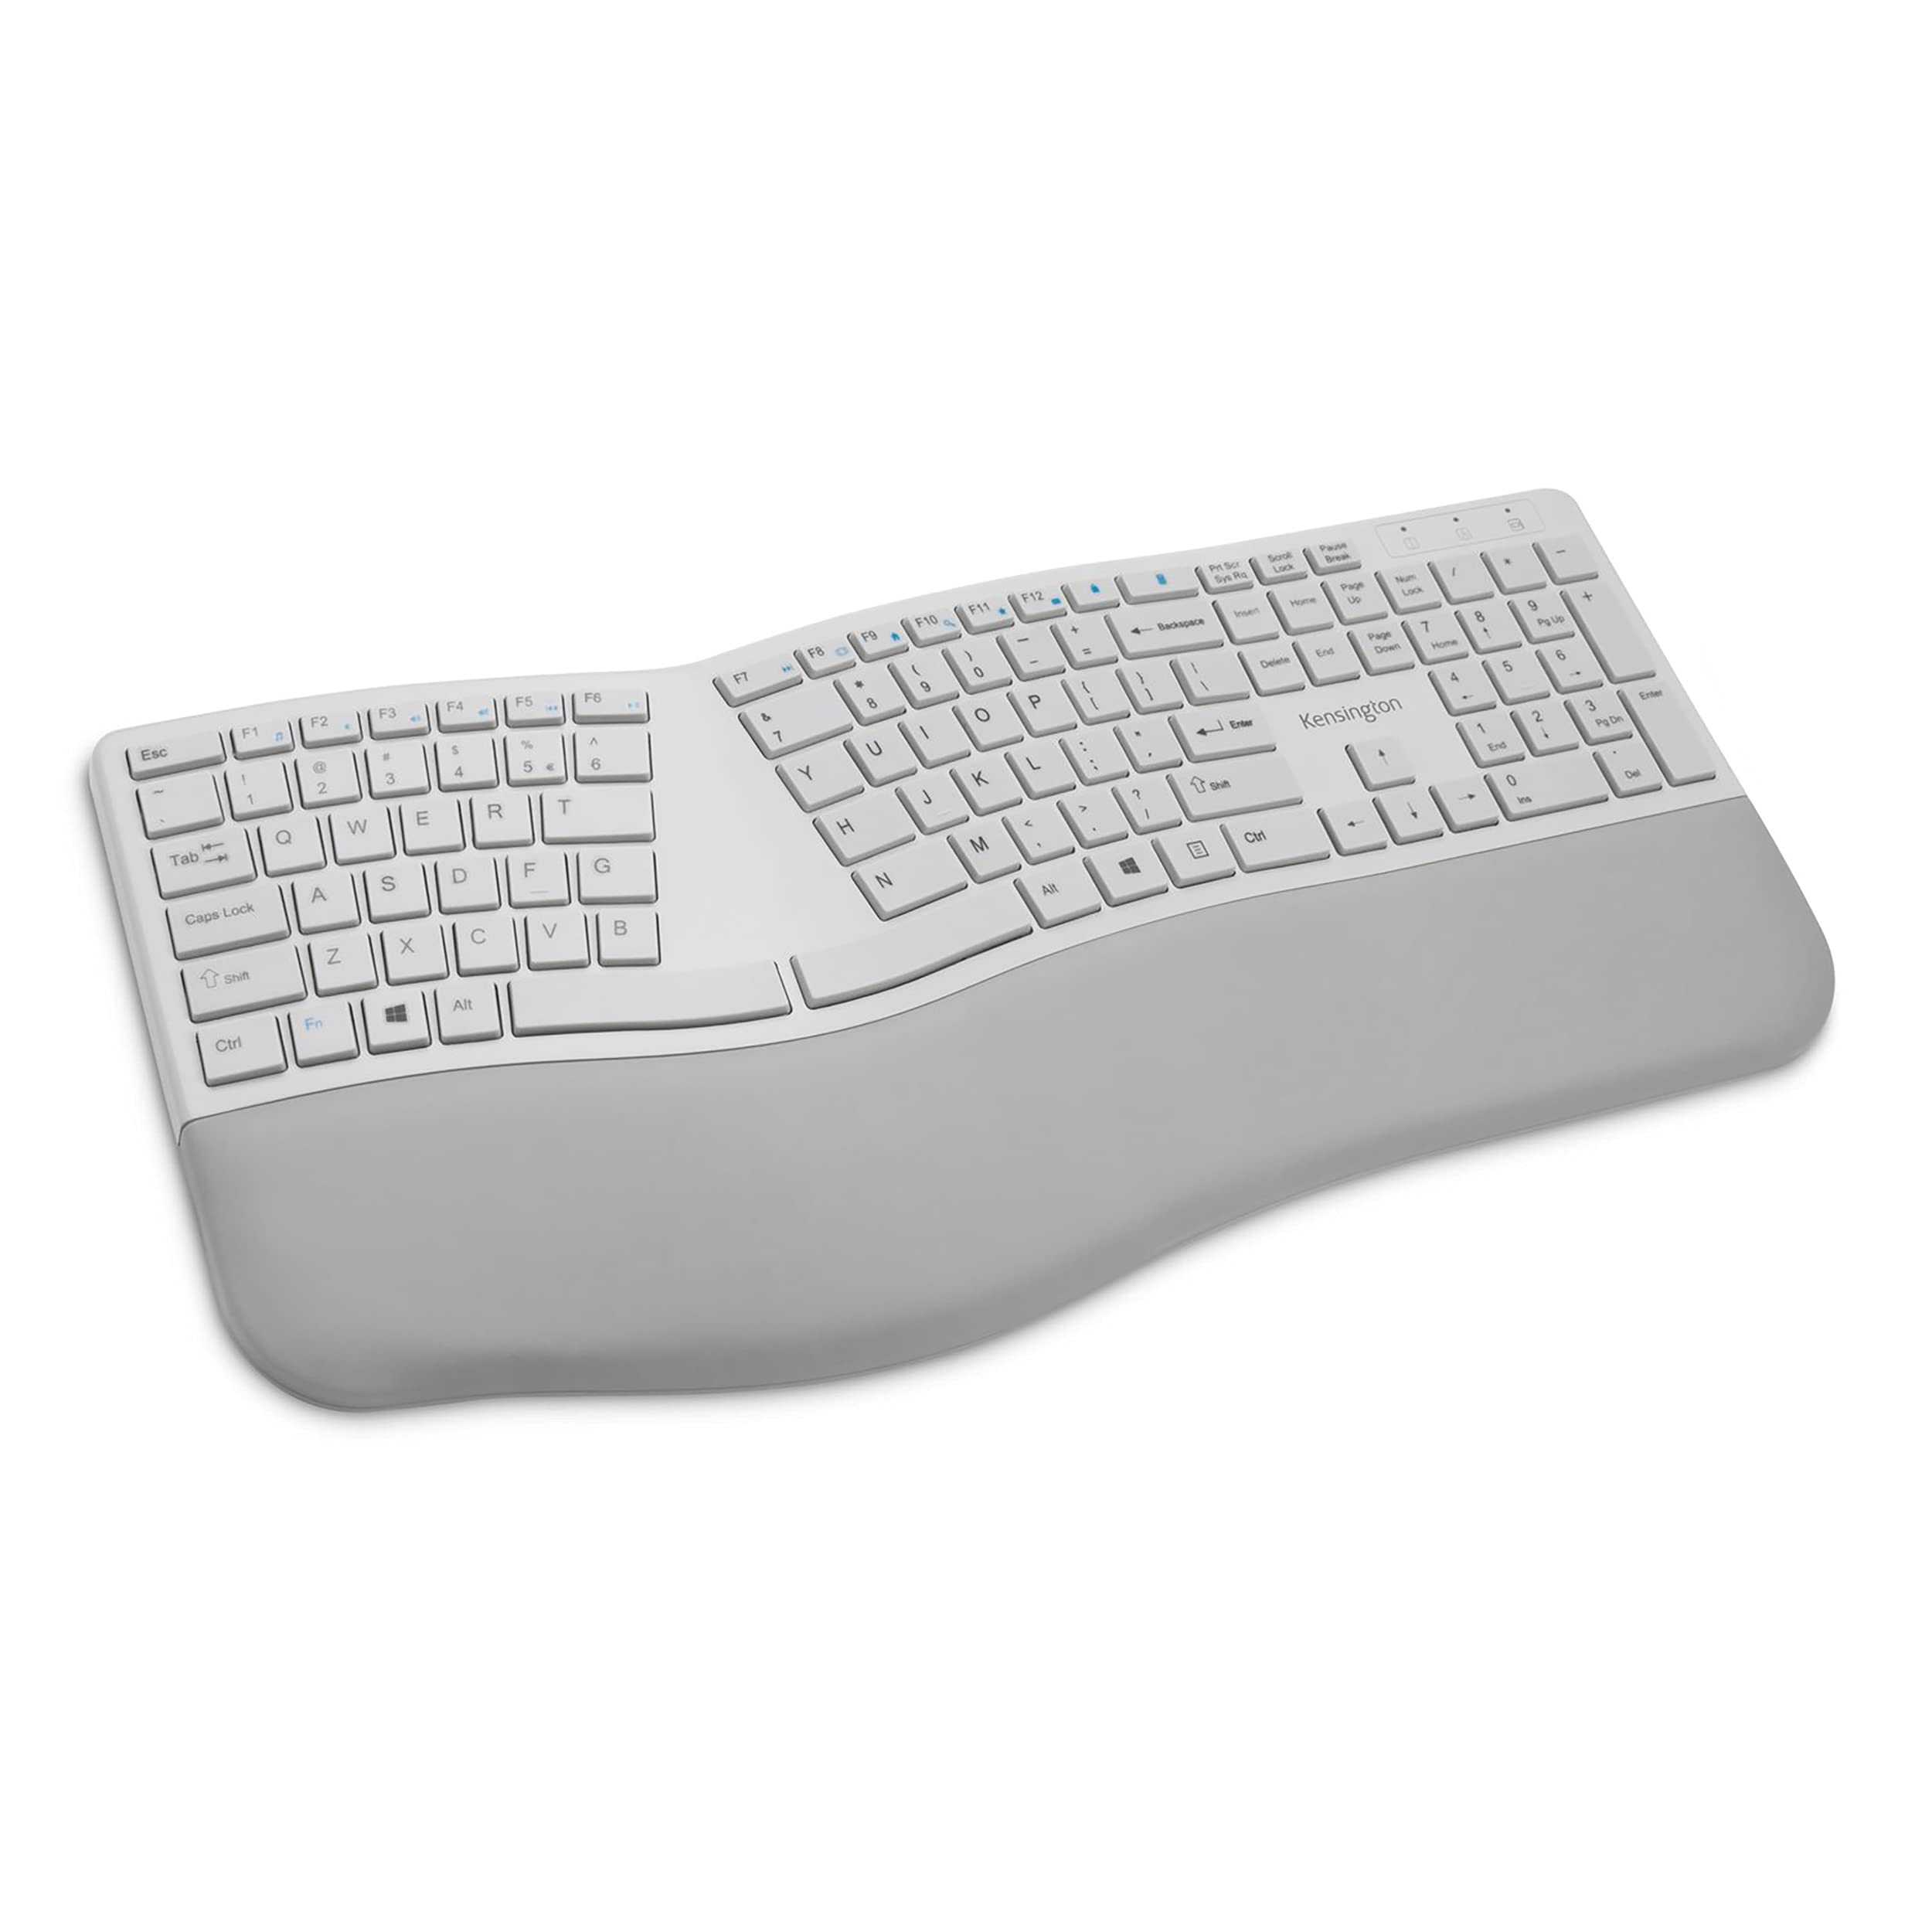 Kensington Pro Fit Ergonomic Wireless Keyboard - Grey (K75402US)